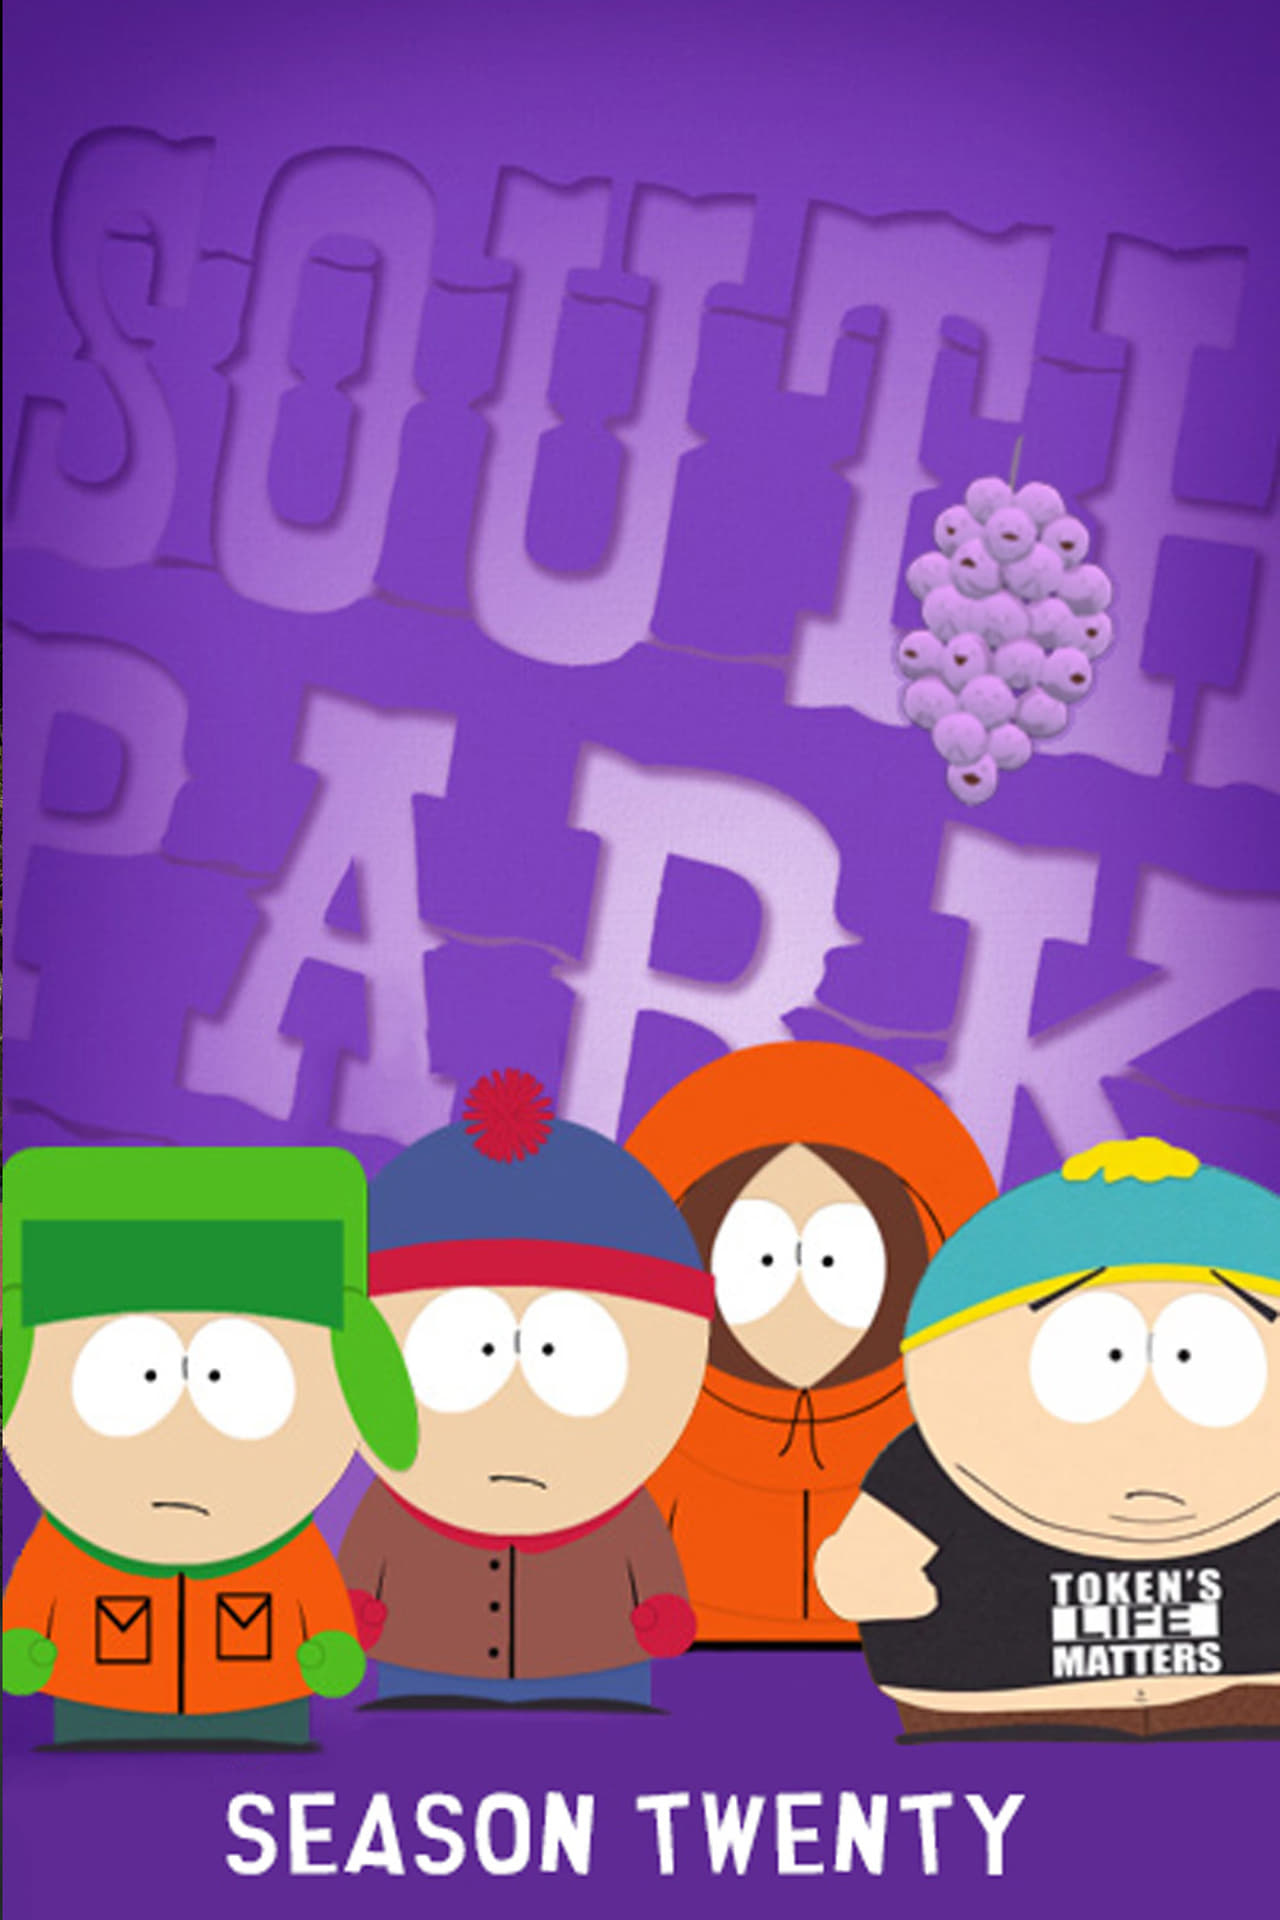 Image South Park